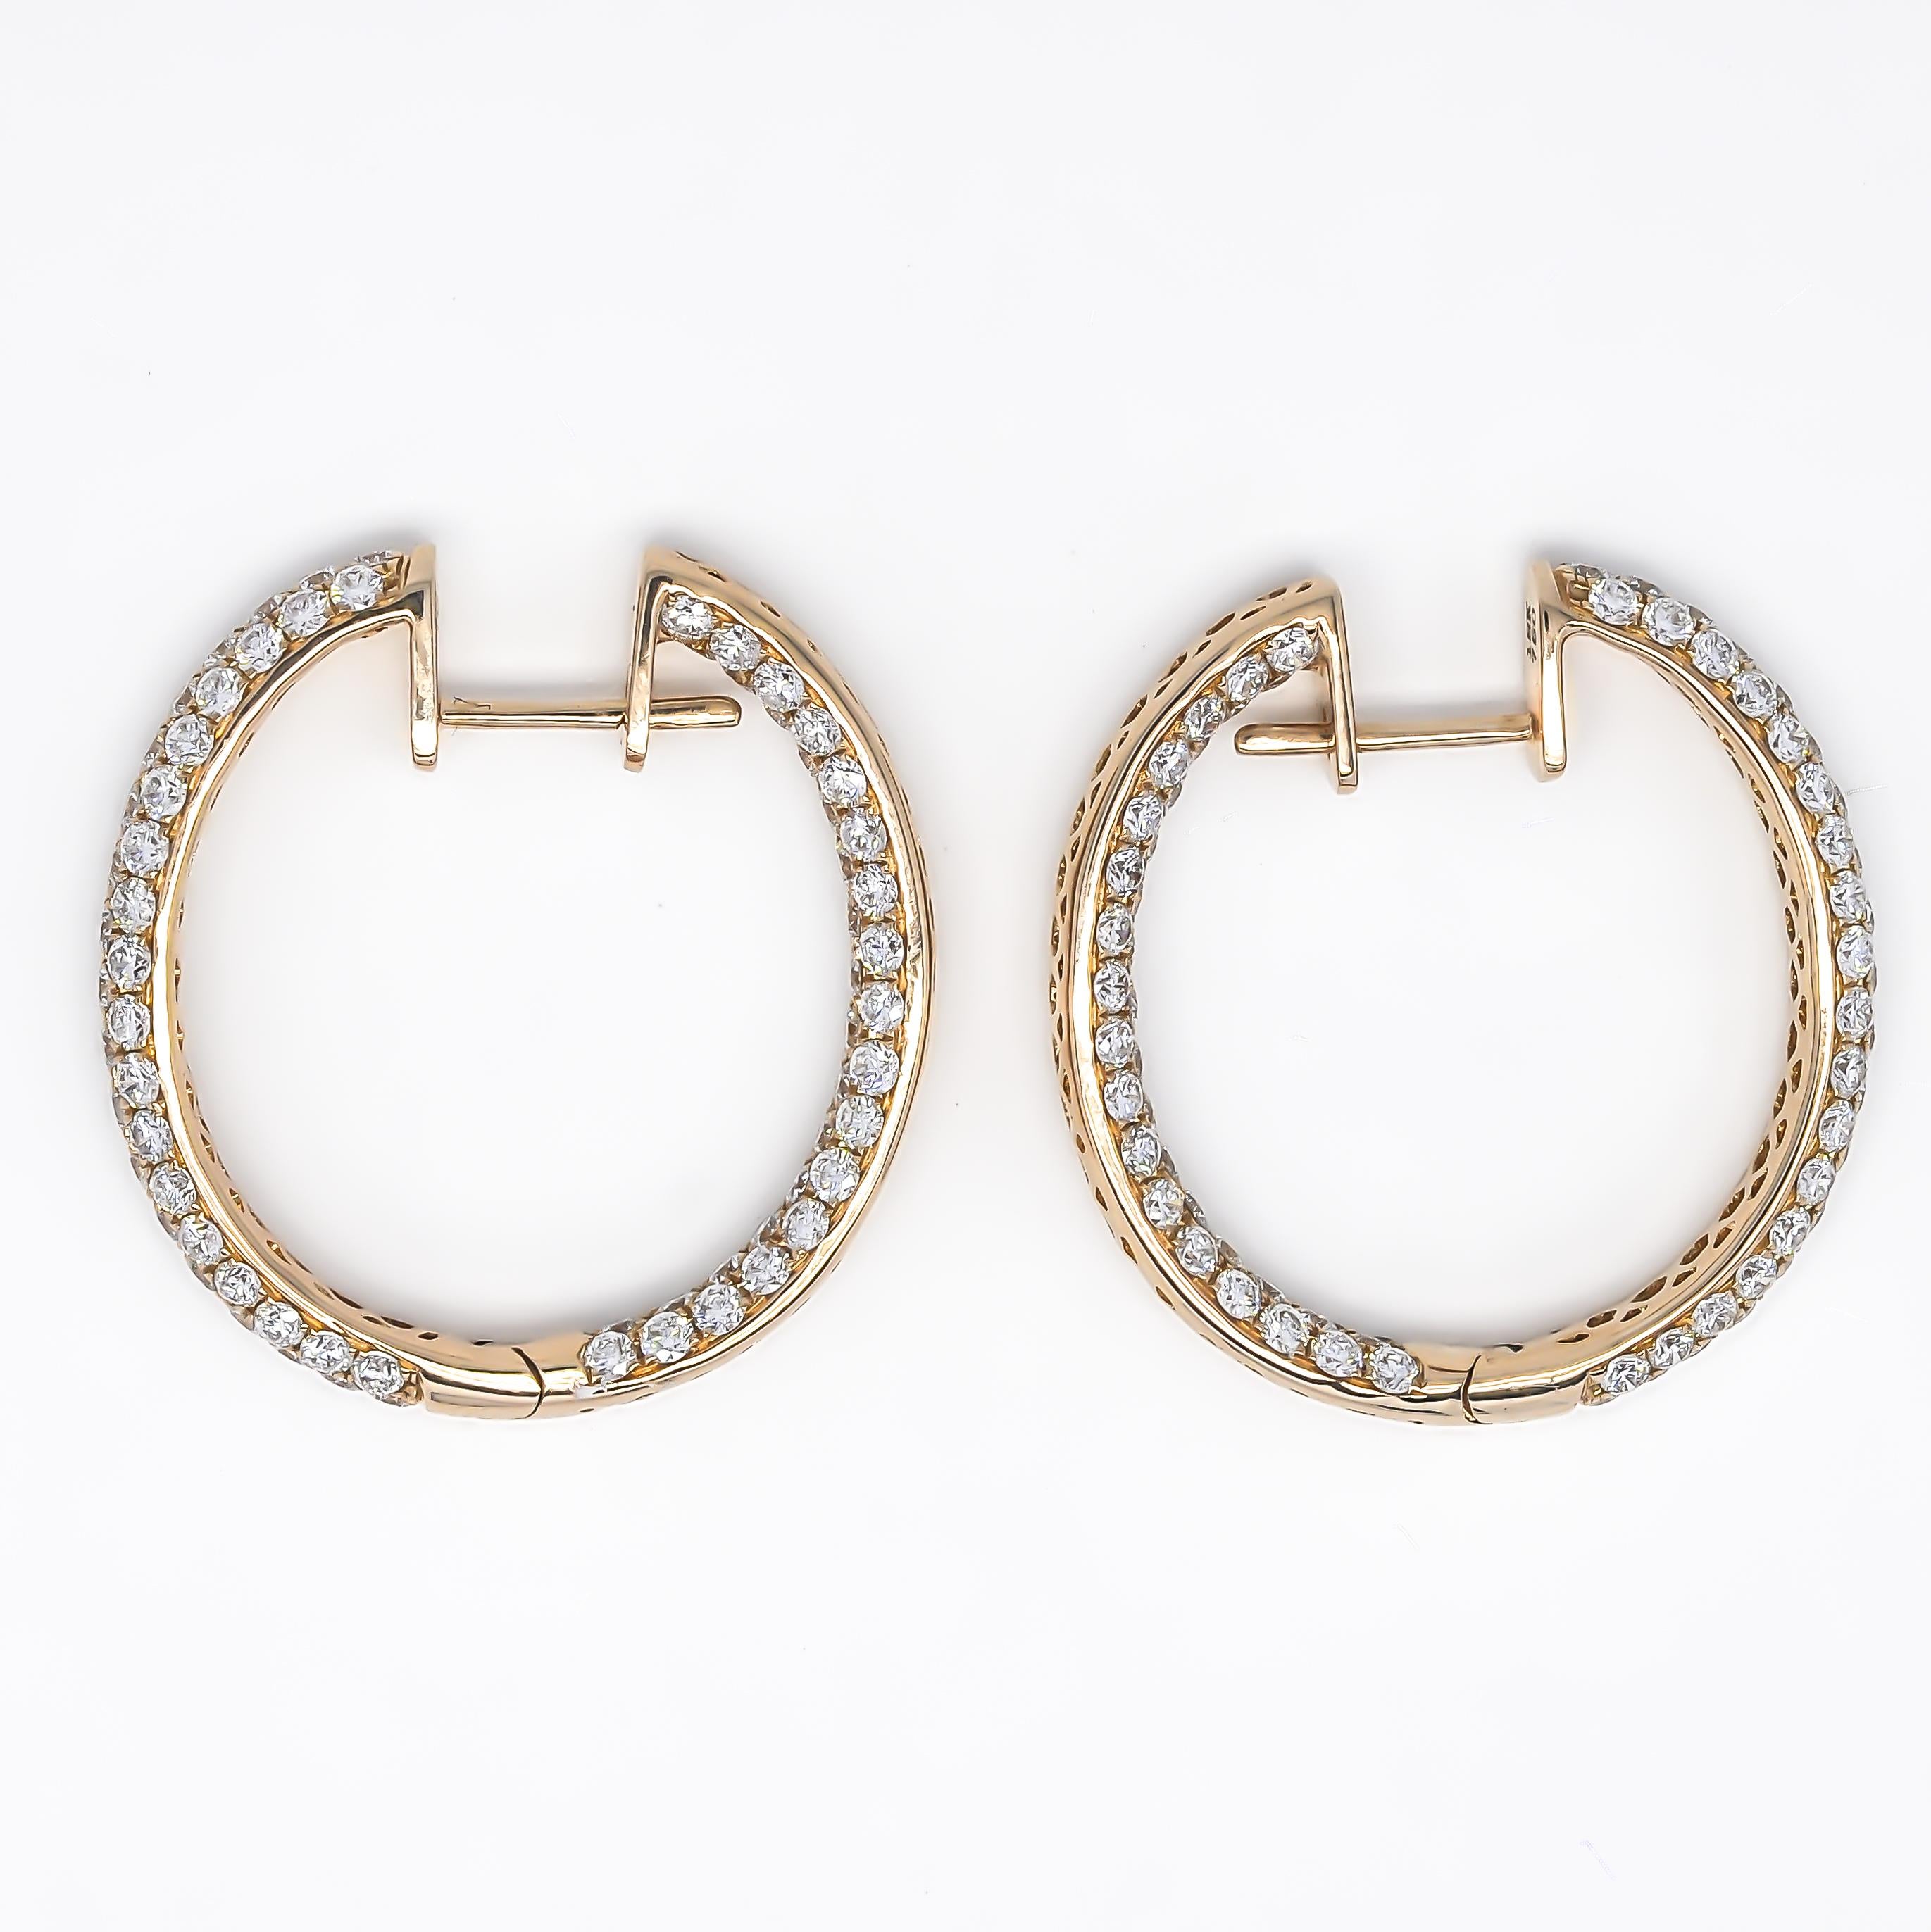 Wir präsentieren die 18KT Rose Gold Natural Diamonds In and Out 3 Row Hoop Earrings - eine spektakuläre Verschmelzung von Eleganz, Luxus und Raffinesse. Diese Ohrringe sind der Inbegriff von hochwertigem Schmuckdesign, das das Herz jeder Frau